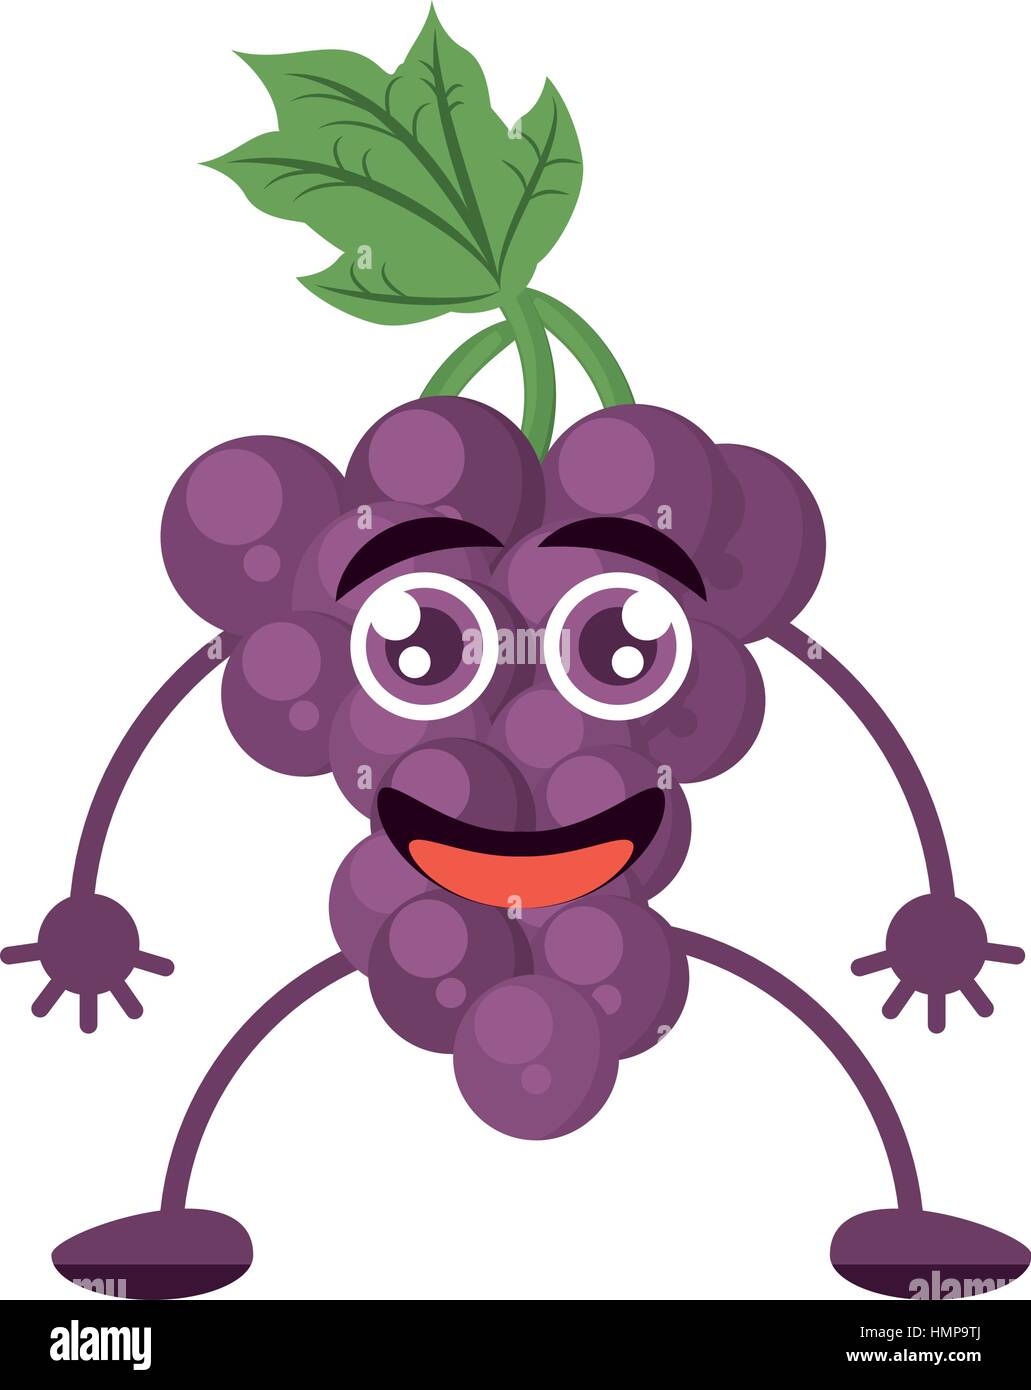 cute grape raising character fruit Stock Vector